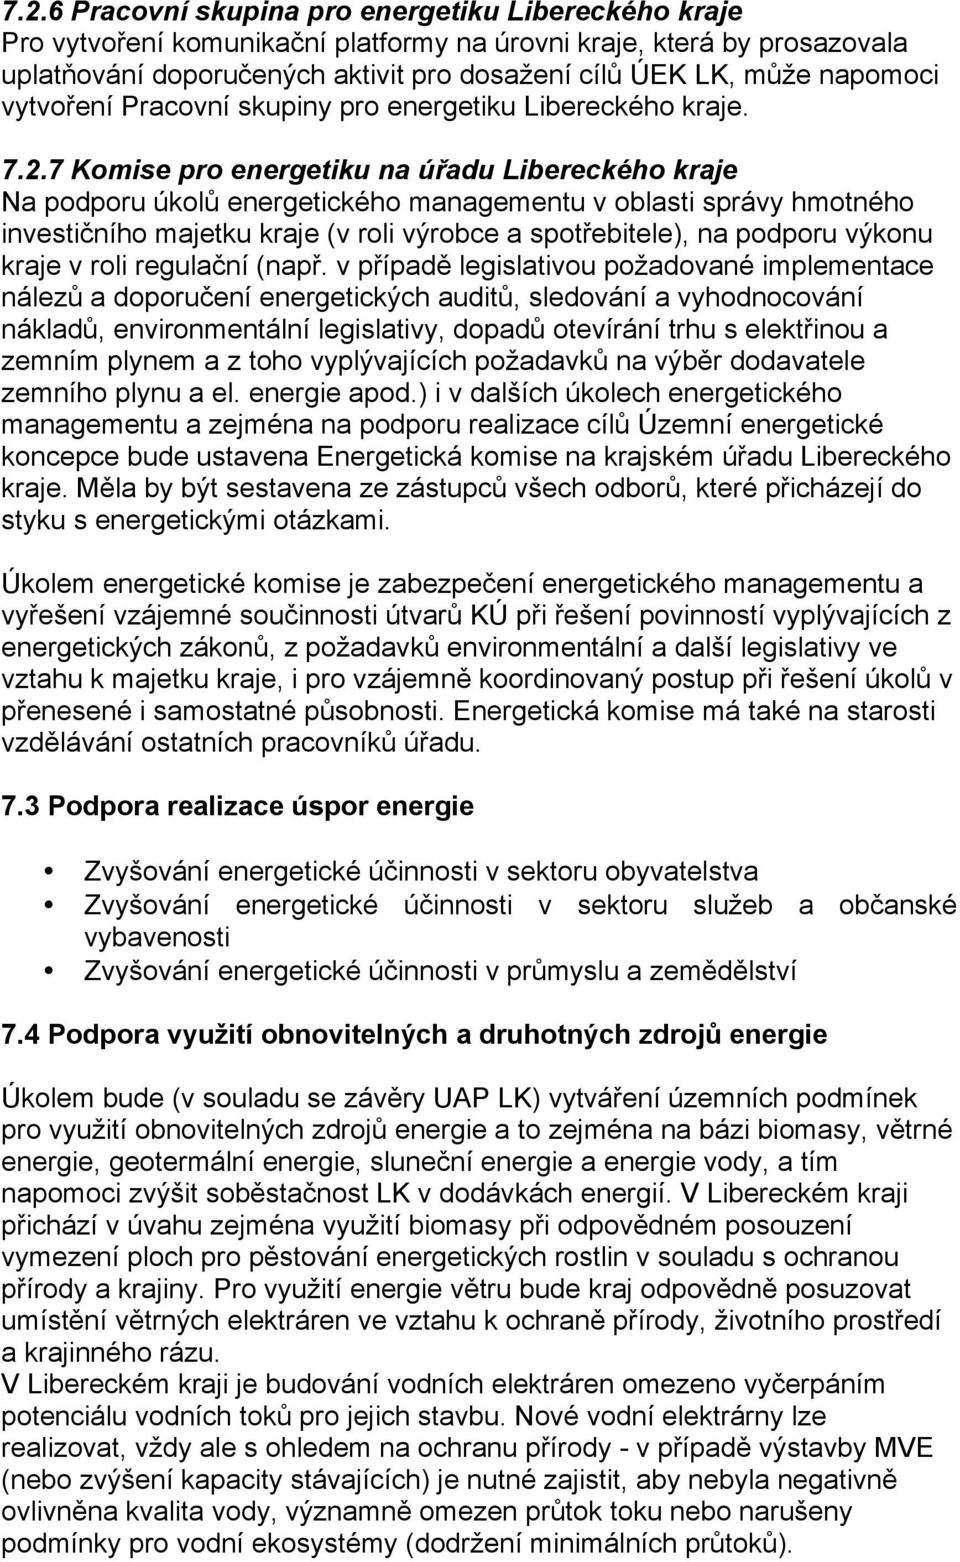 7 Komise pro energetiku na úřadu Libereckého kraje Na podporu úkolů energetického managementu v oblasti správy hmotného investičního majetku kraje (v roli výrobce a spotřebitele), na podporu výkonu